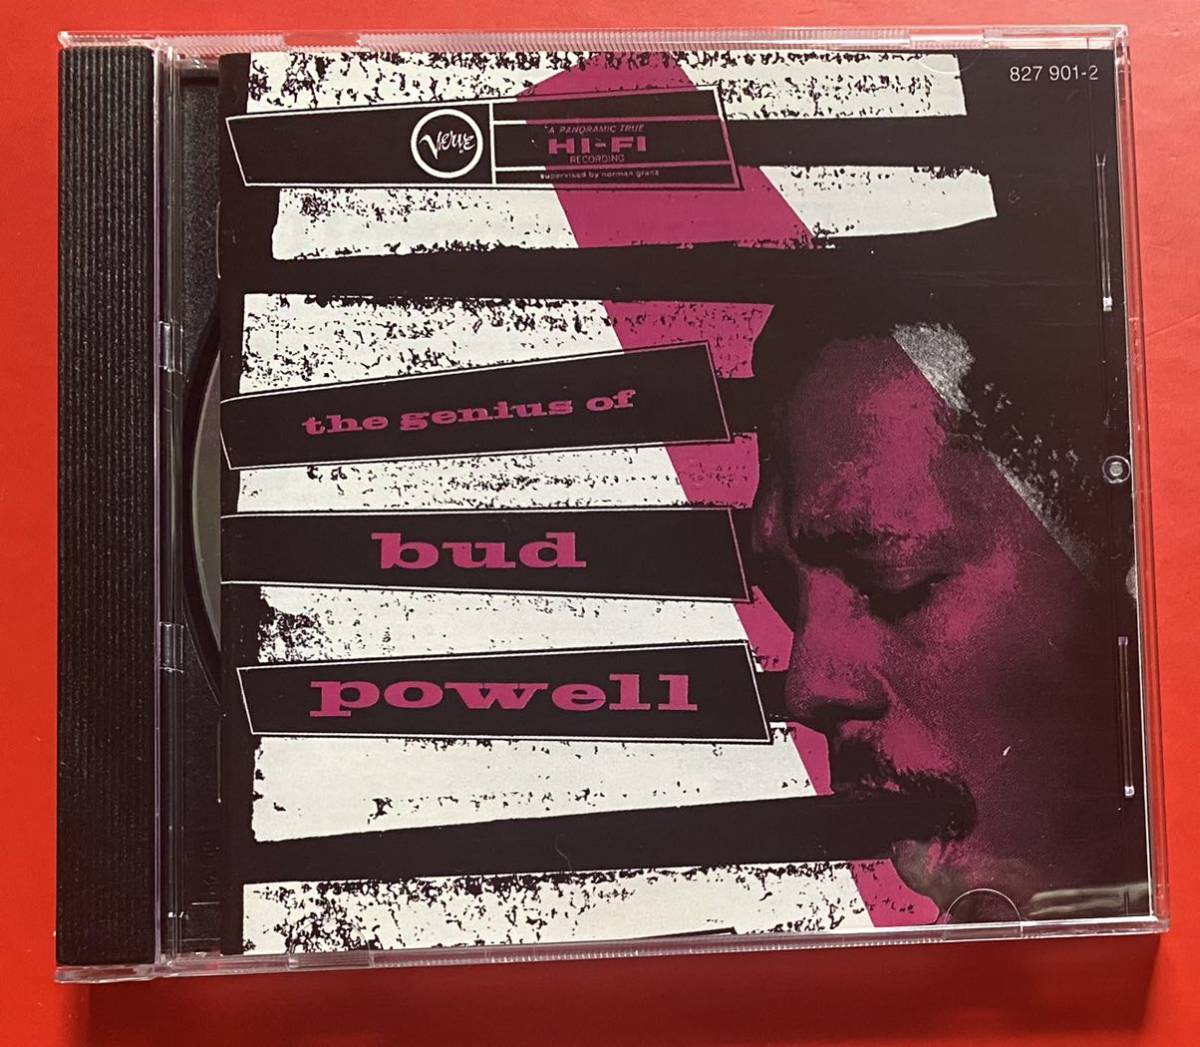 【CD】「THE GENIUS OF BUD POWELL」バド・パウエル 輸入盤 ボーナストラックあり [12250124]_画像1